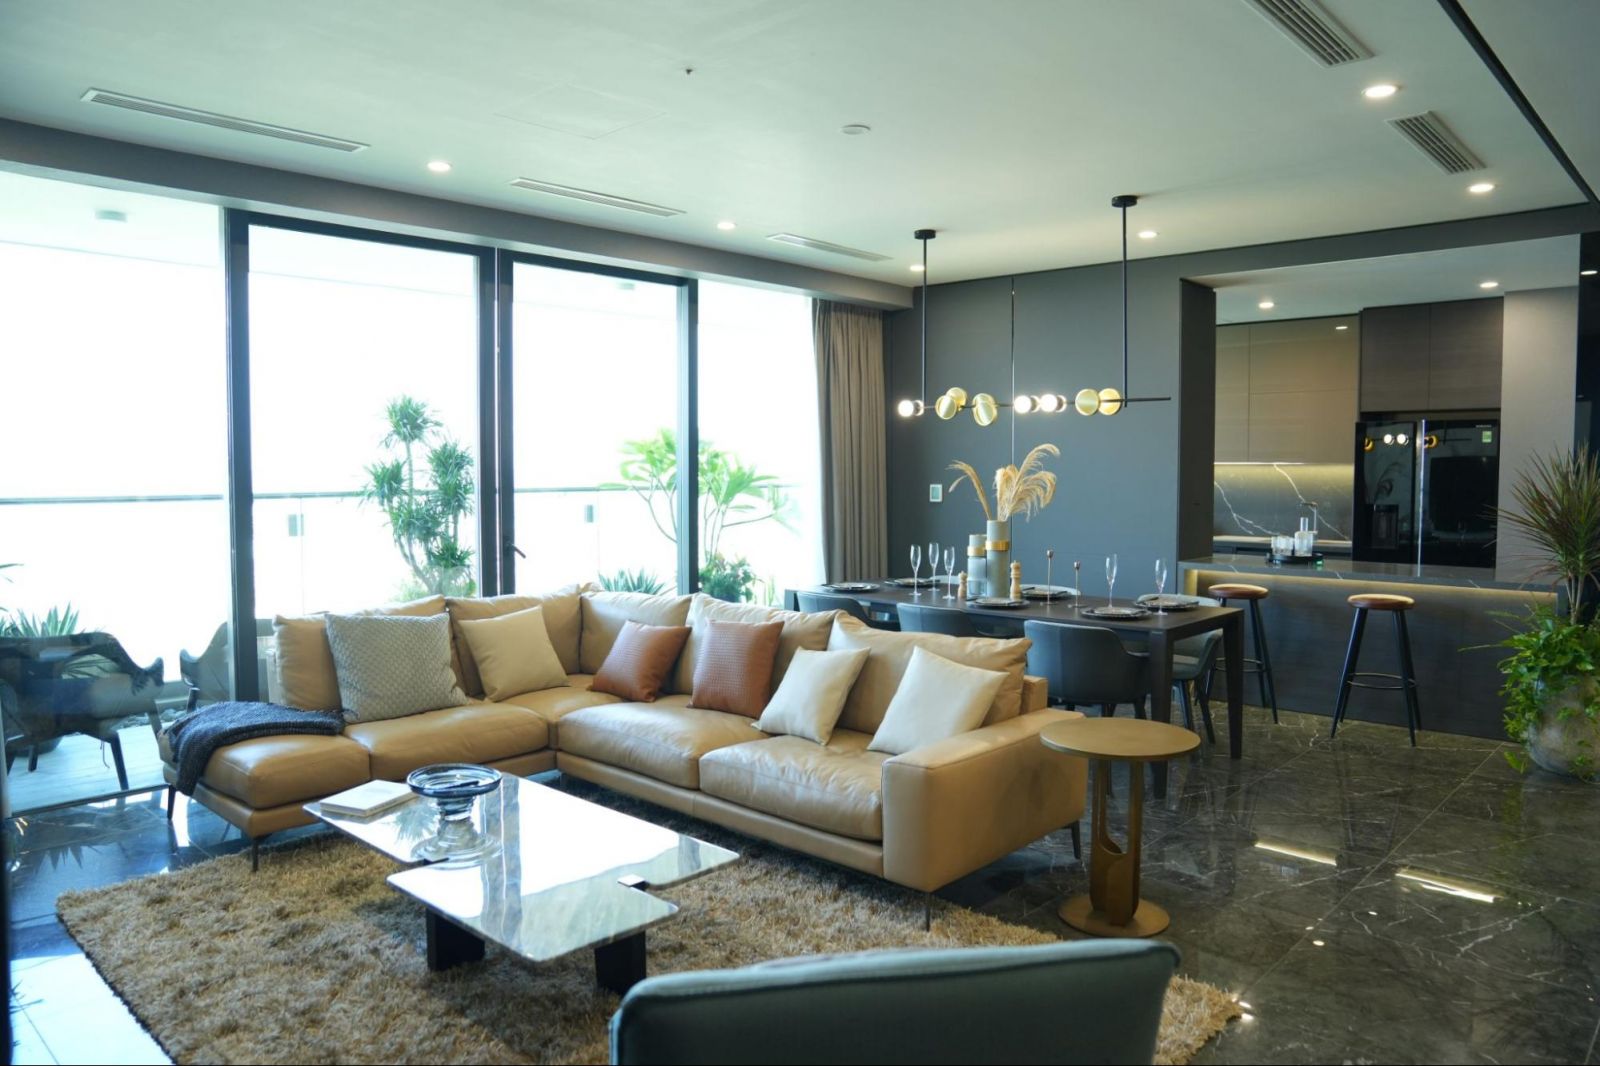 Với thiết kế đa dạng, các căn hộ tại Sunshine Golden River có từ 2-4 phòng ngủ, đáp ứng nhu cầu của các gia đình đa thế hệ